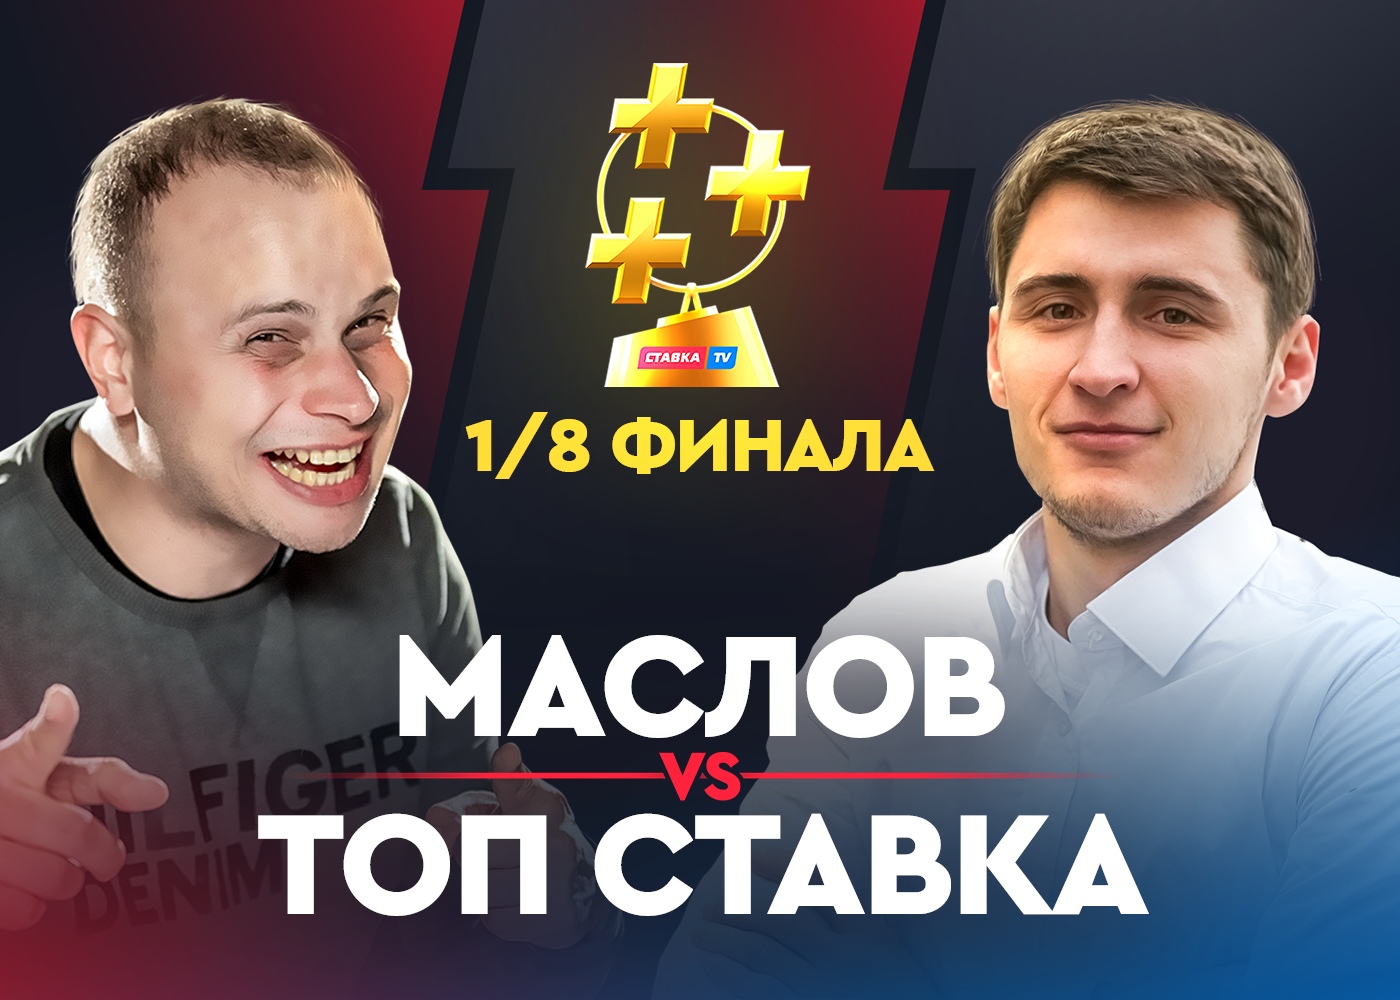 Маслов vs ТОП СТАВКА. Битва блогеров в Кубке прогнозистов Рунета